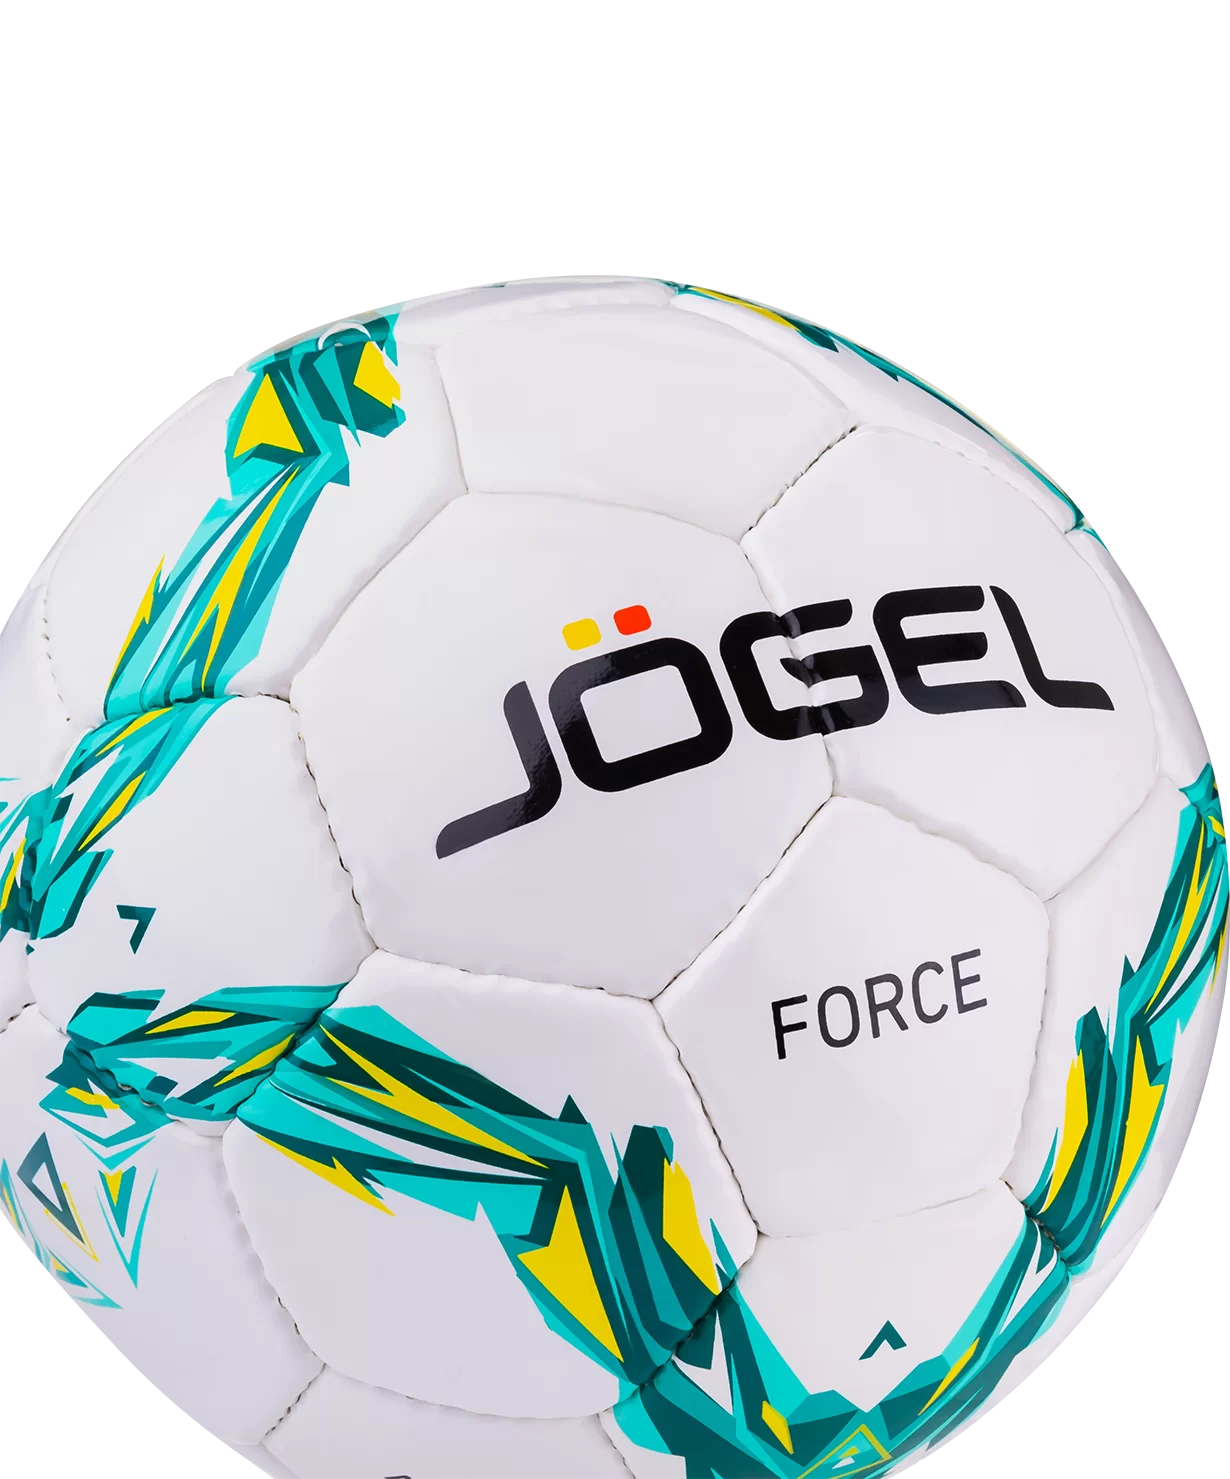 Реальное фото Мяч футбольный Jogel JS-460 Force №4 12393 от магазина СпортСЕ